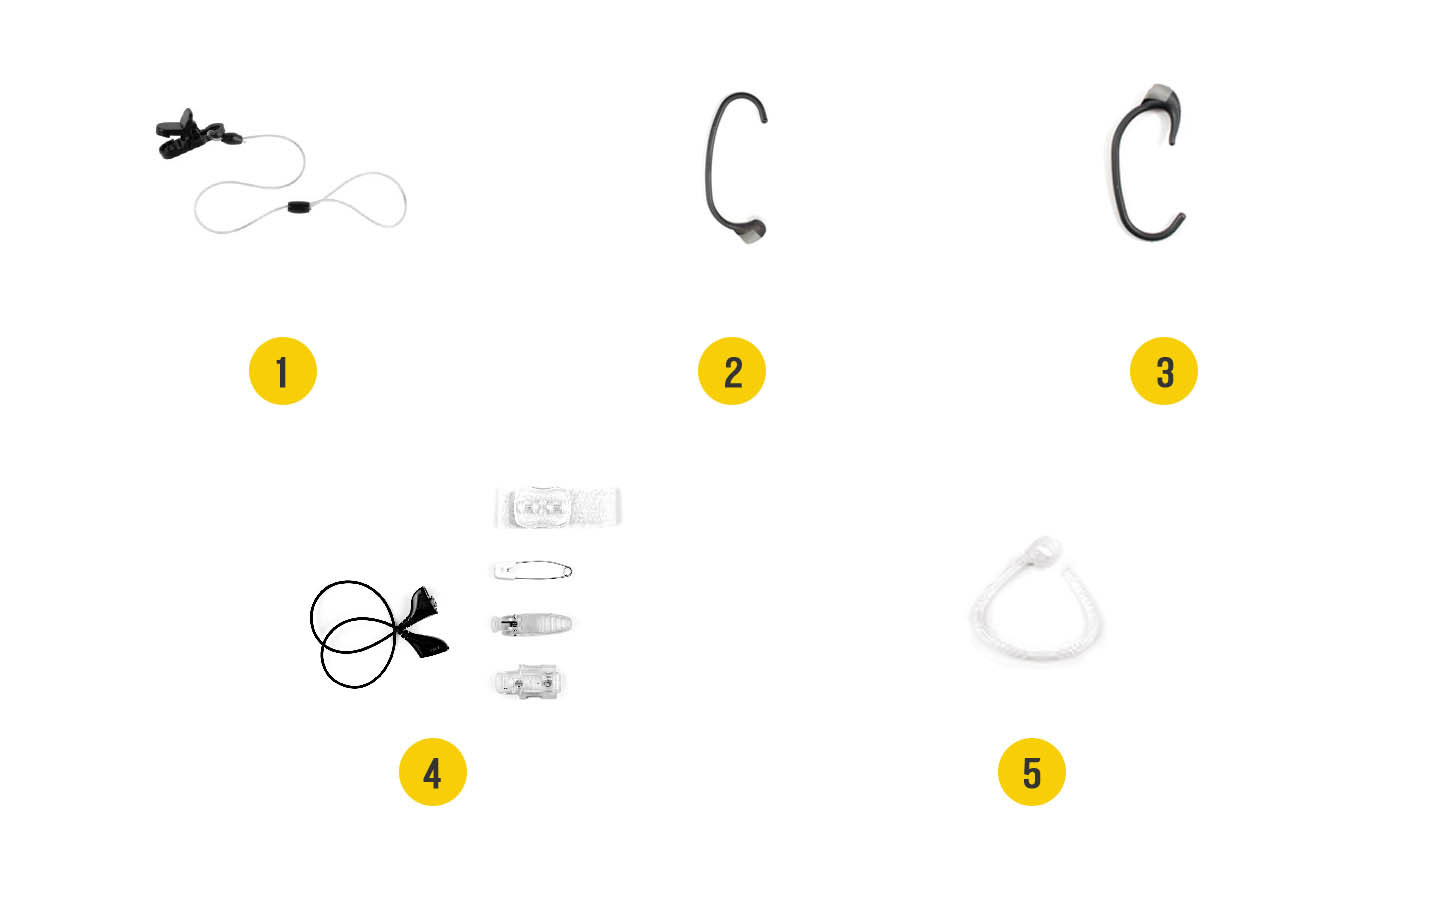 Afbeelding van de accessoires voor de Baha-geluidsprocessor: 1. Krokodillenklem met lang veiligheidssnoertje, 2. Oorhaak+, 3. Snugfit, 4. Litewear, 5. Mic lock